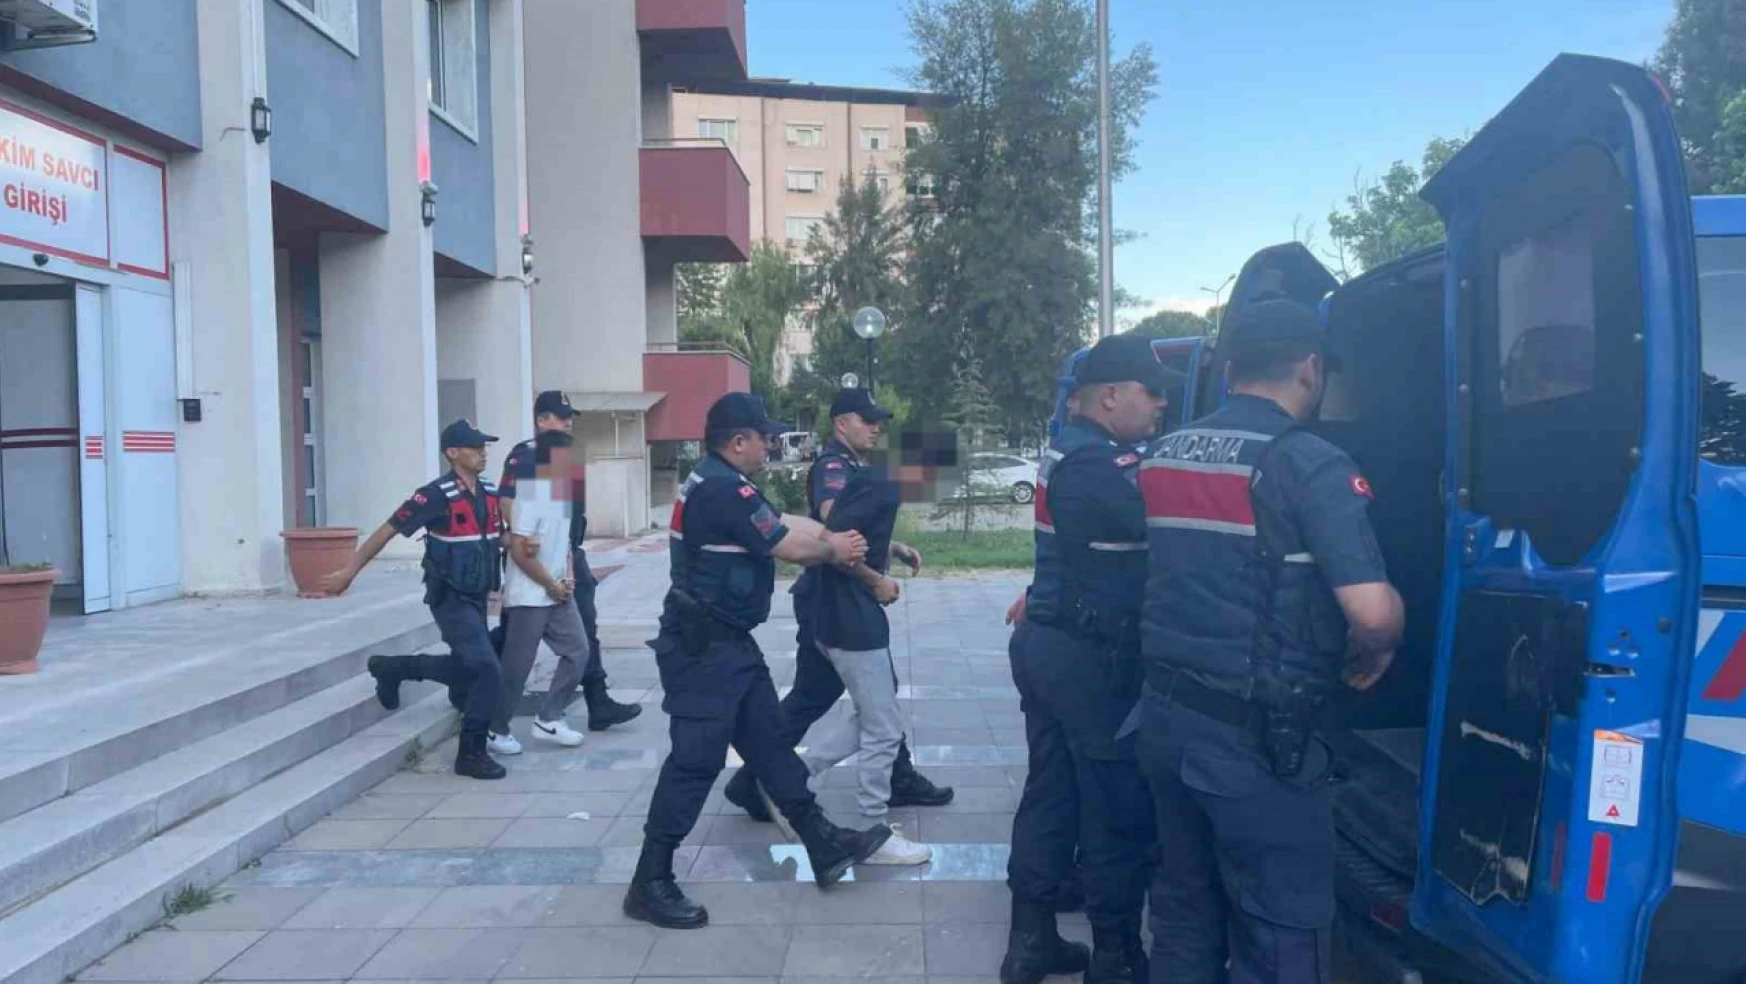 İzmir'den Nazilliye uyuşturucu sevkiyatını Jandarma önledi